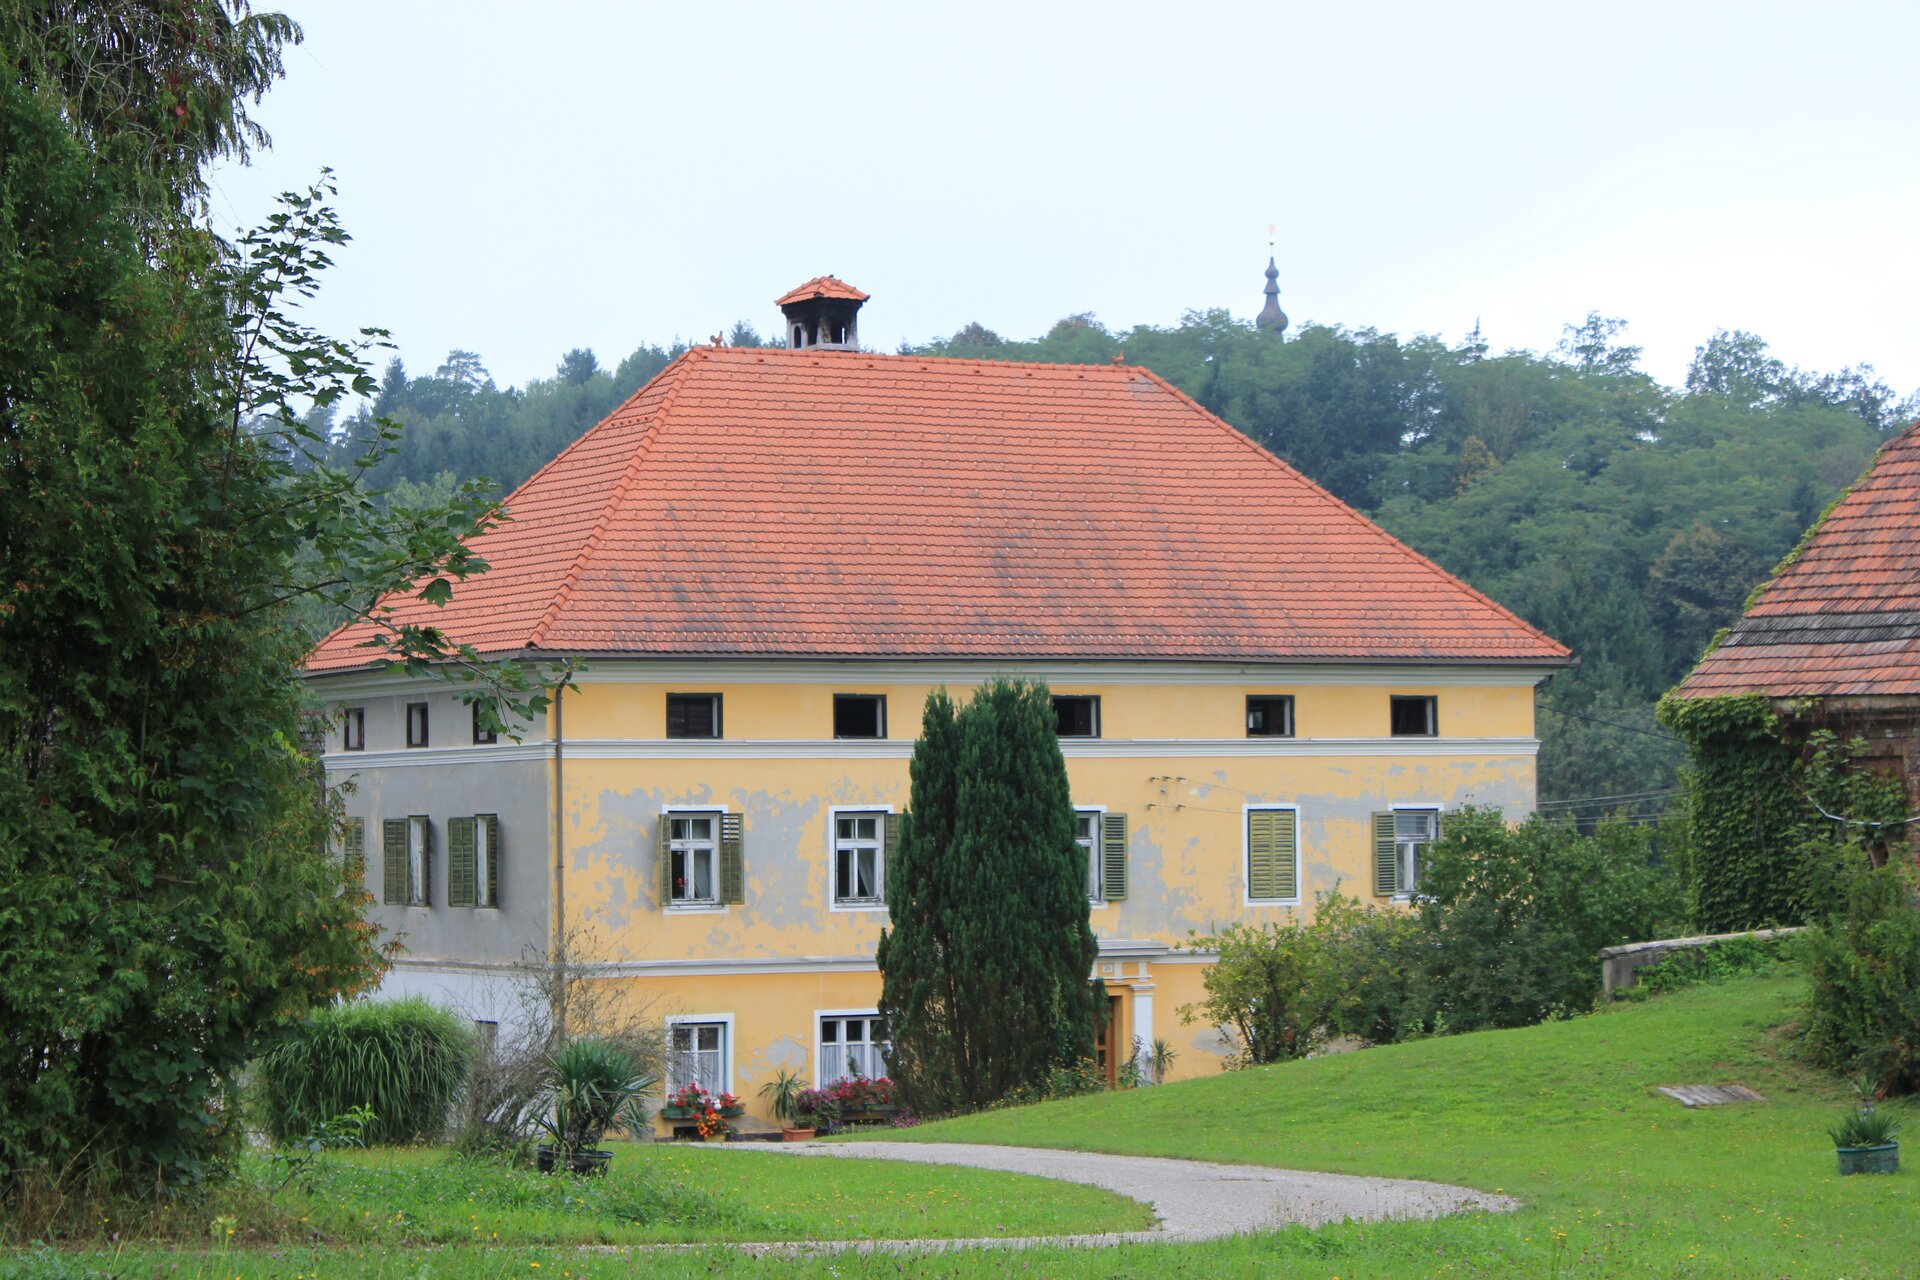 Fotografia przedstawia Preglhof w Obersdorfie, czyli dom rodzinny Weberna. Jest to duży budynek z żółtą elewacją i czerwonym dachem, usytuowany wśród zieleni. Okna maja zielone okiennice. Niebo jest zachmurzone.